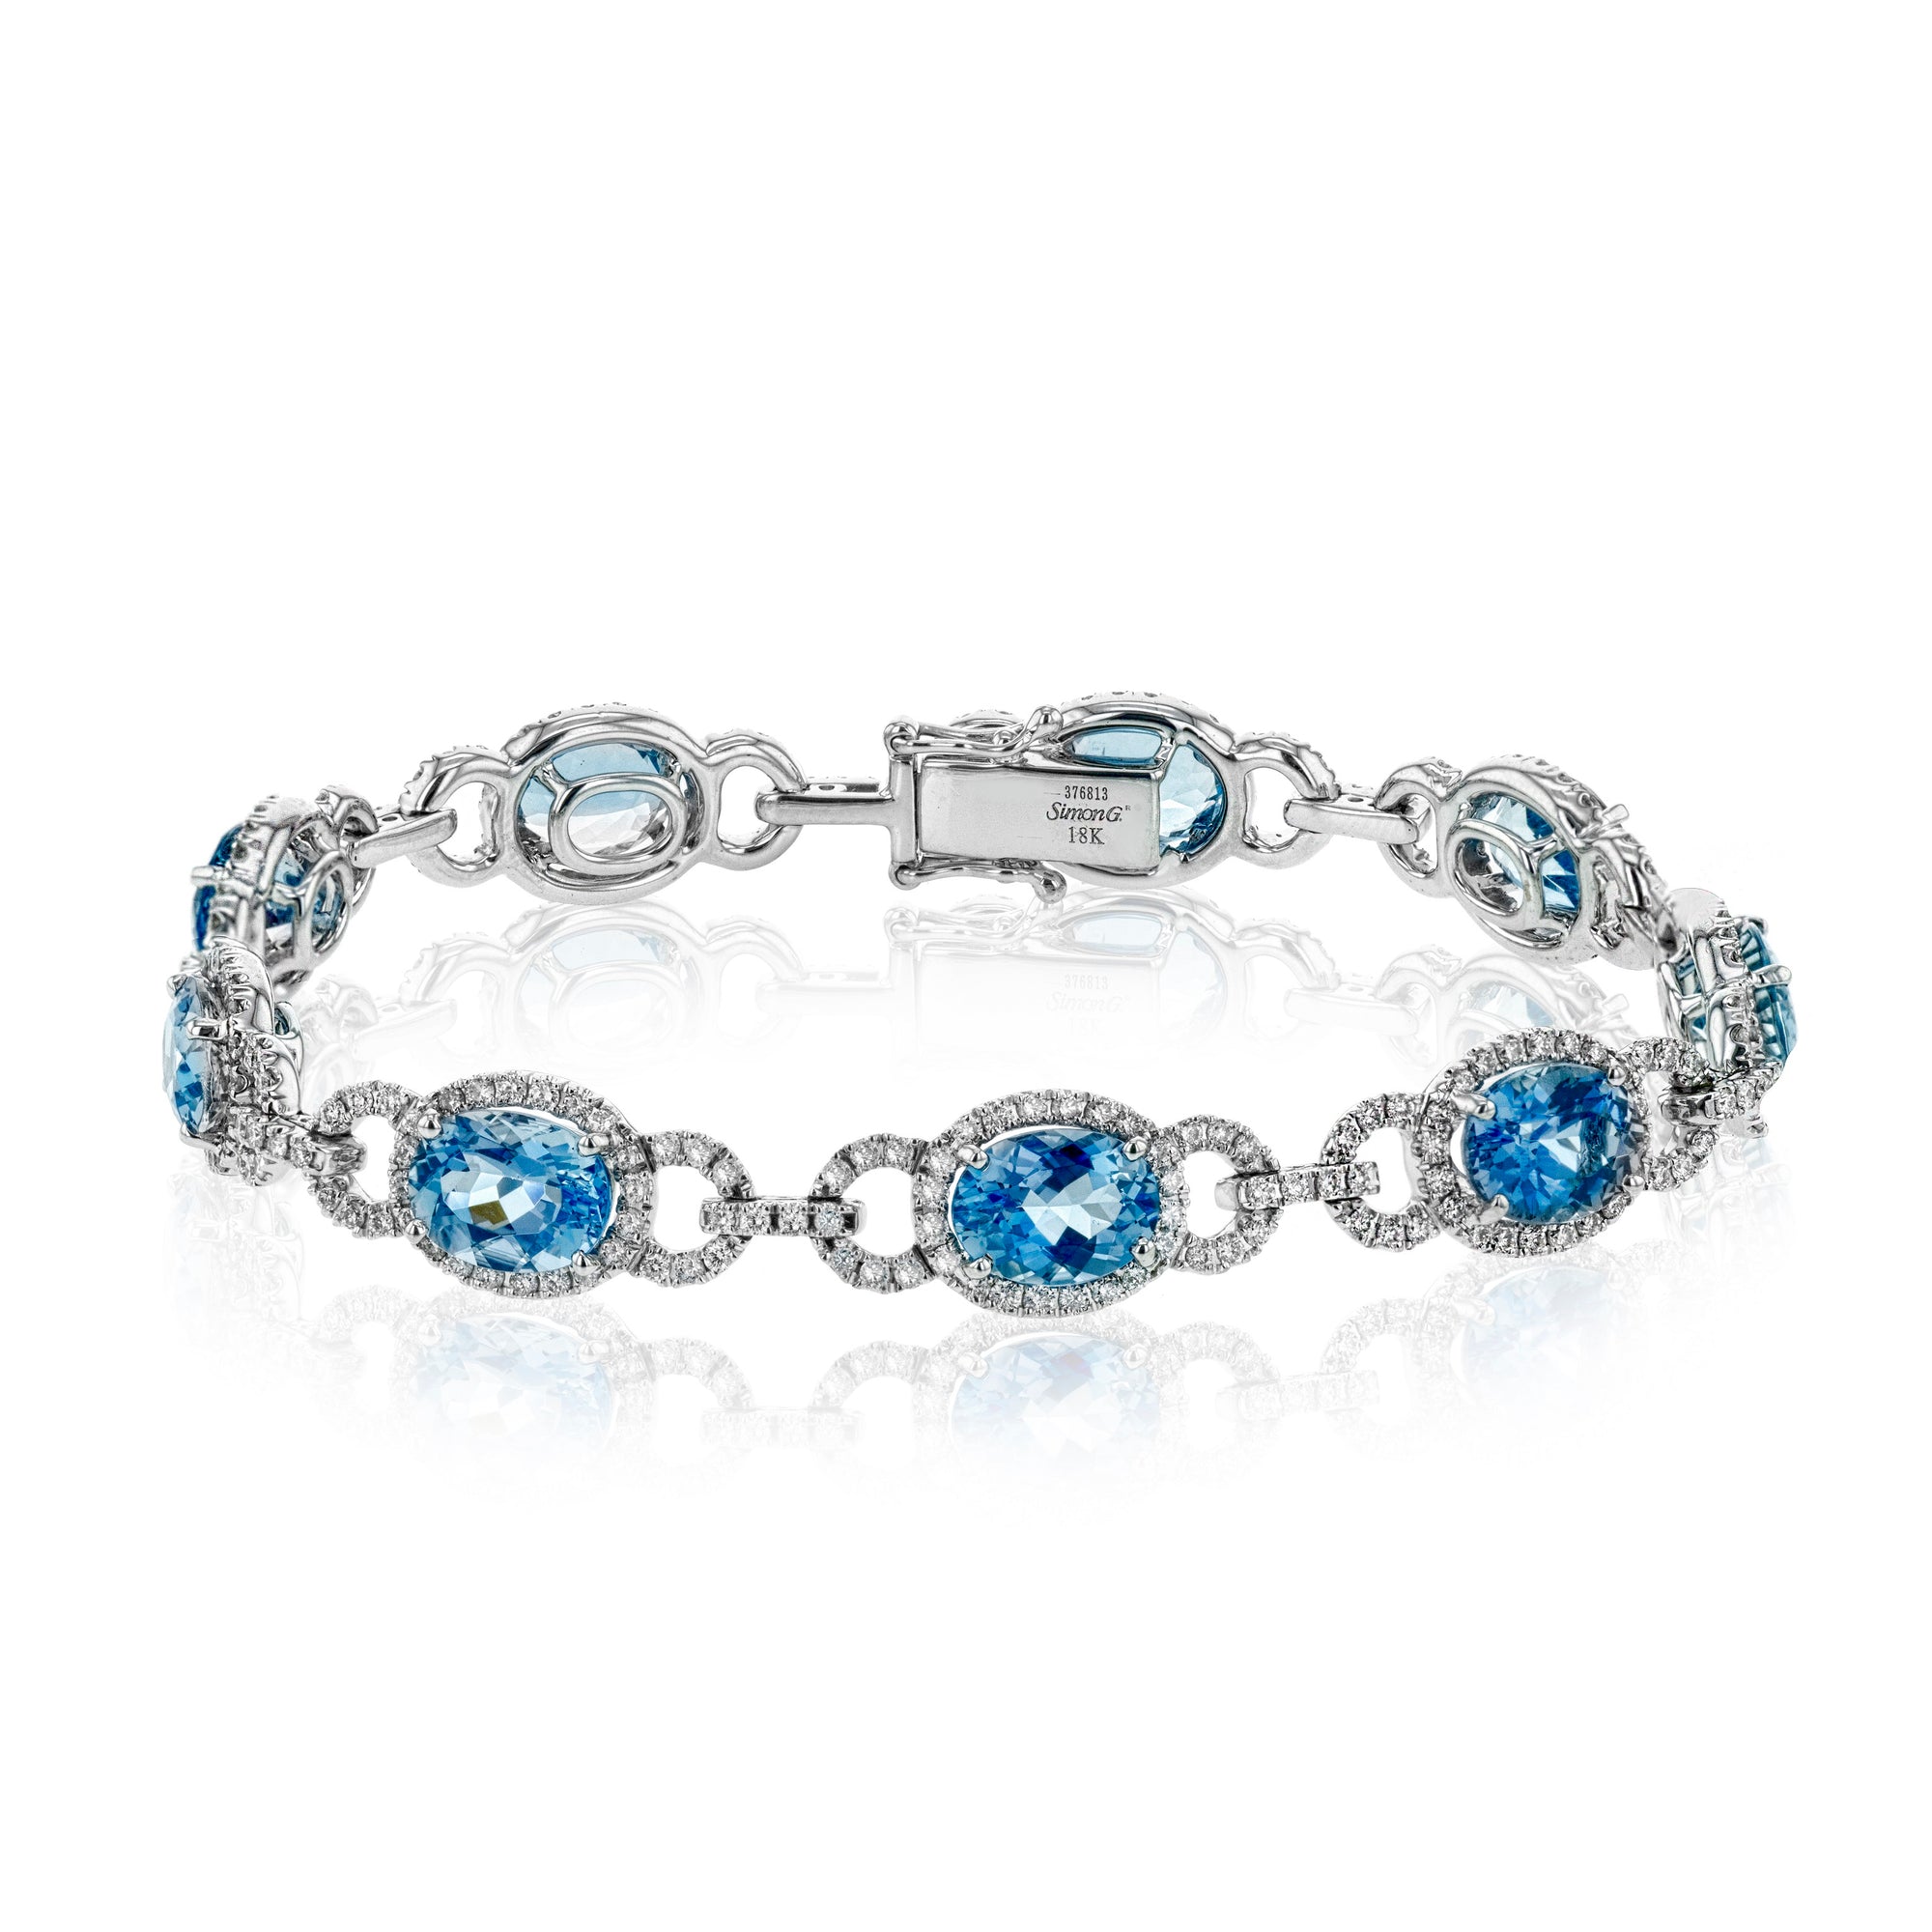 JewelsbyTashne Bracelets -